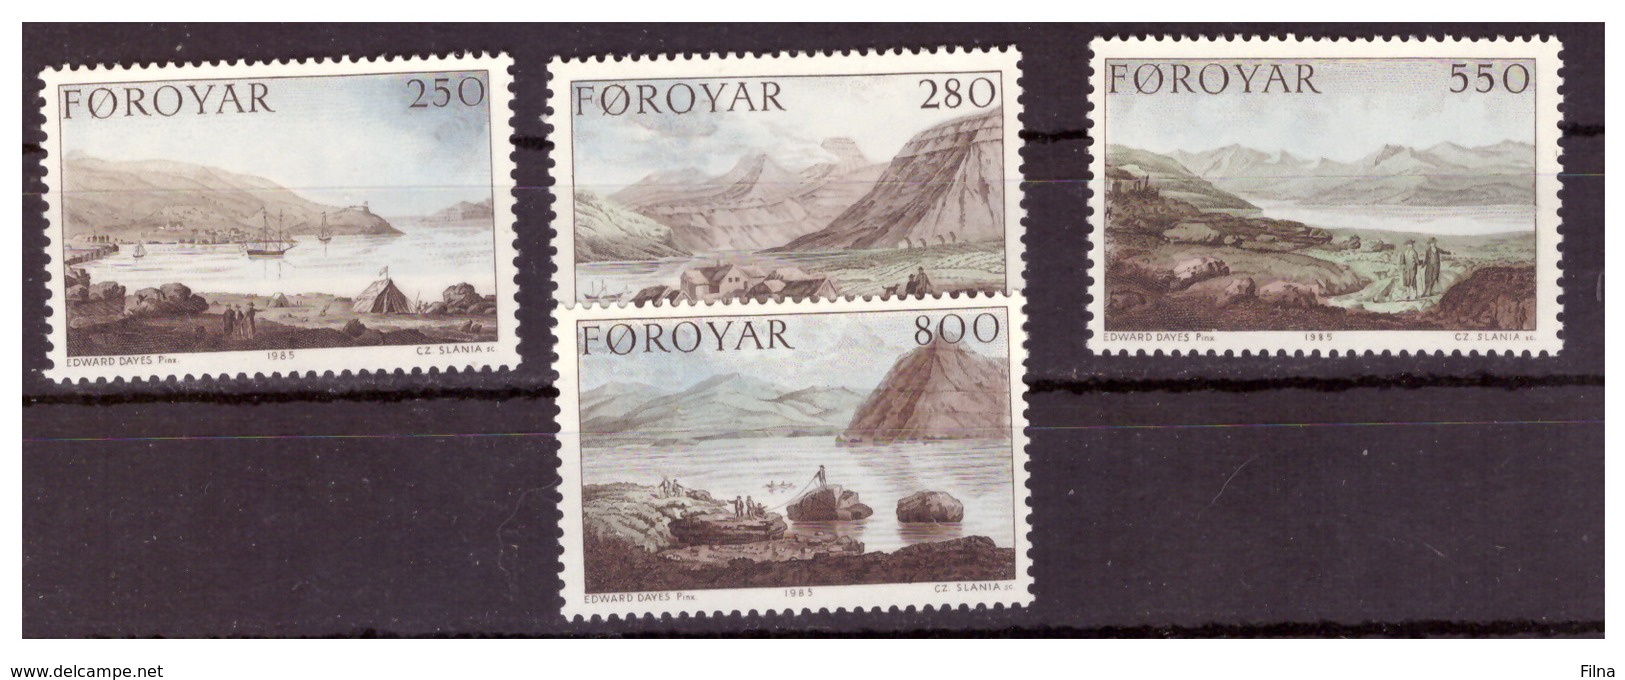 ISOLE FÆR ØER - 1985 - LA SPEDIZIONE STANLEY DEL 1789. DIPINTI DI EDWARD DAYS. SERIE COMPLETA. - MNH** - Isole Faroer